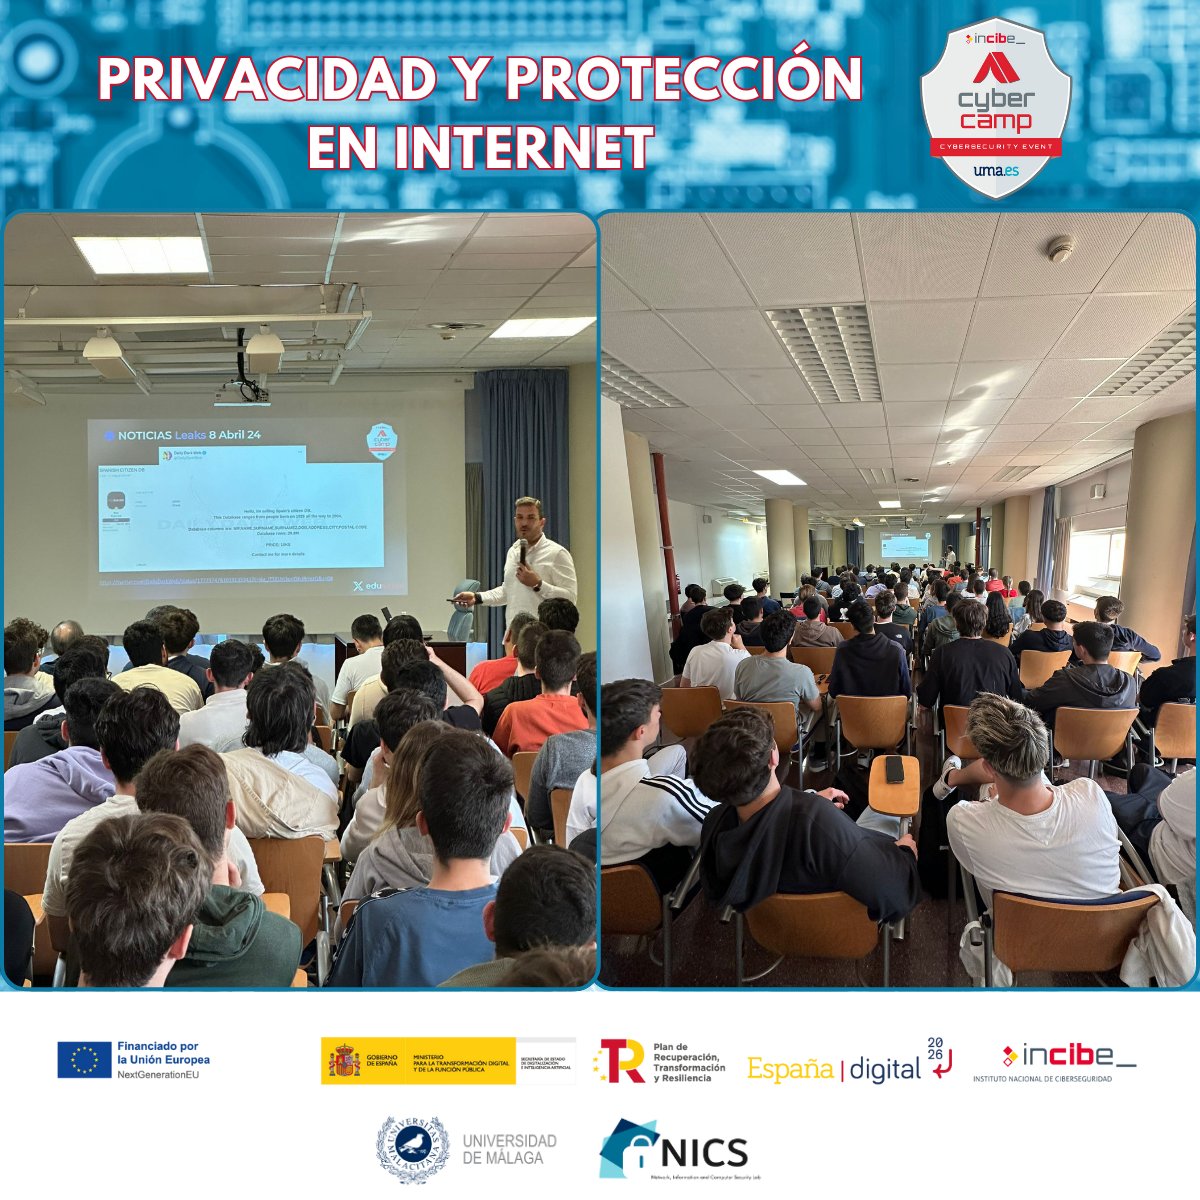 Excelente aprendizaje en la Jornada de #Privacidad y Protección en Internet gracias a los ponentes @eduSatoe @JosepAlbors @ArturoRibagorda y la colaboración de @CybercampES. 
Más eventos #CyberCampUMA en u.uma.es/eU2/